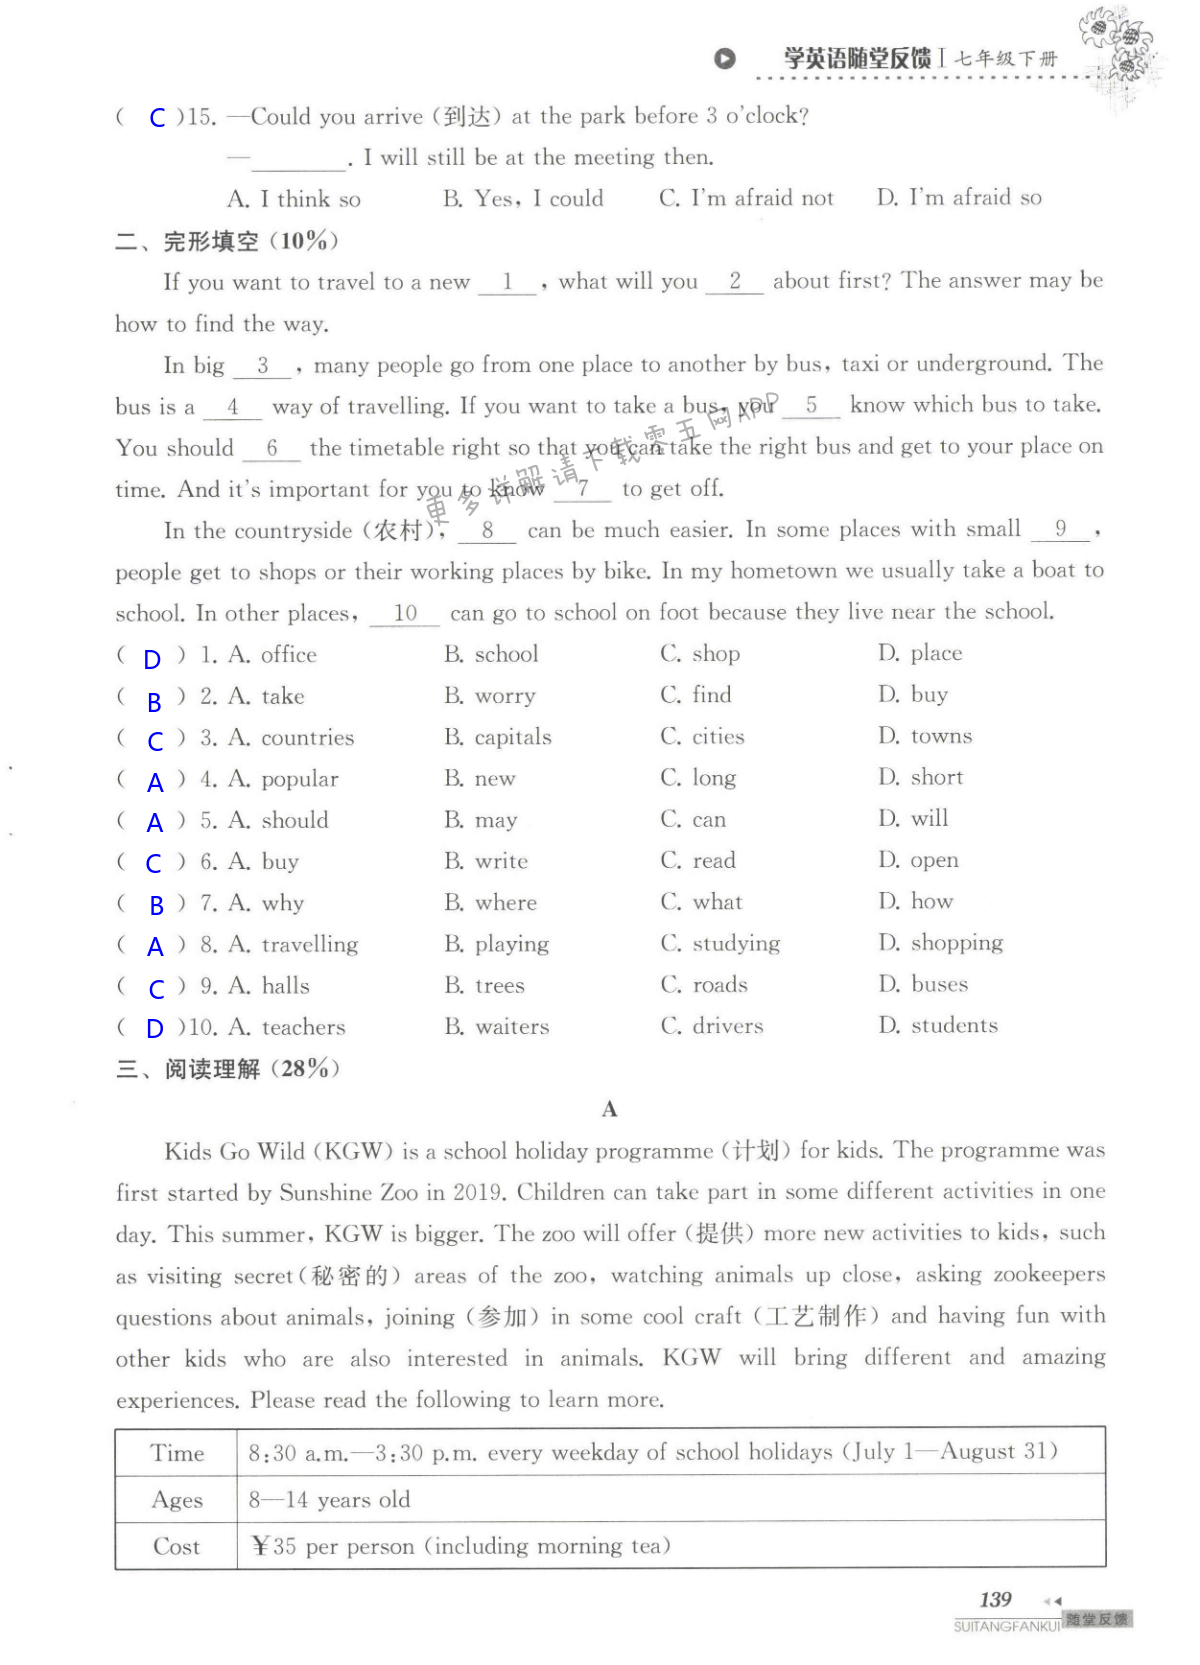 单元综合测试卷  Test for Unit 4 of 7B - 第139页